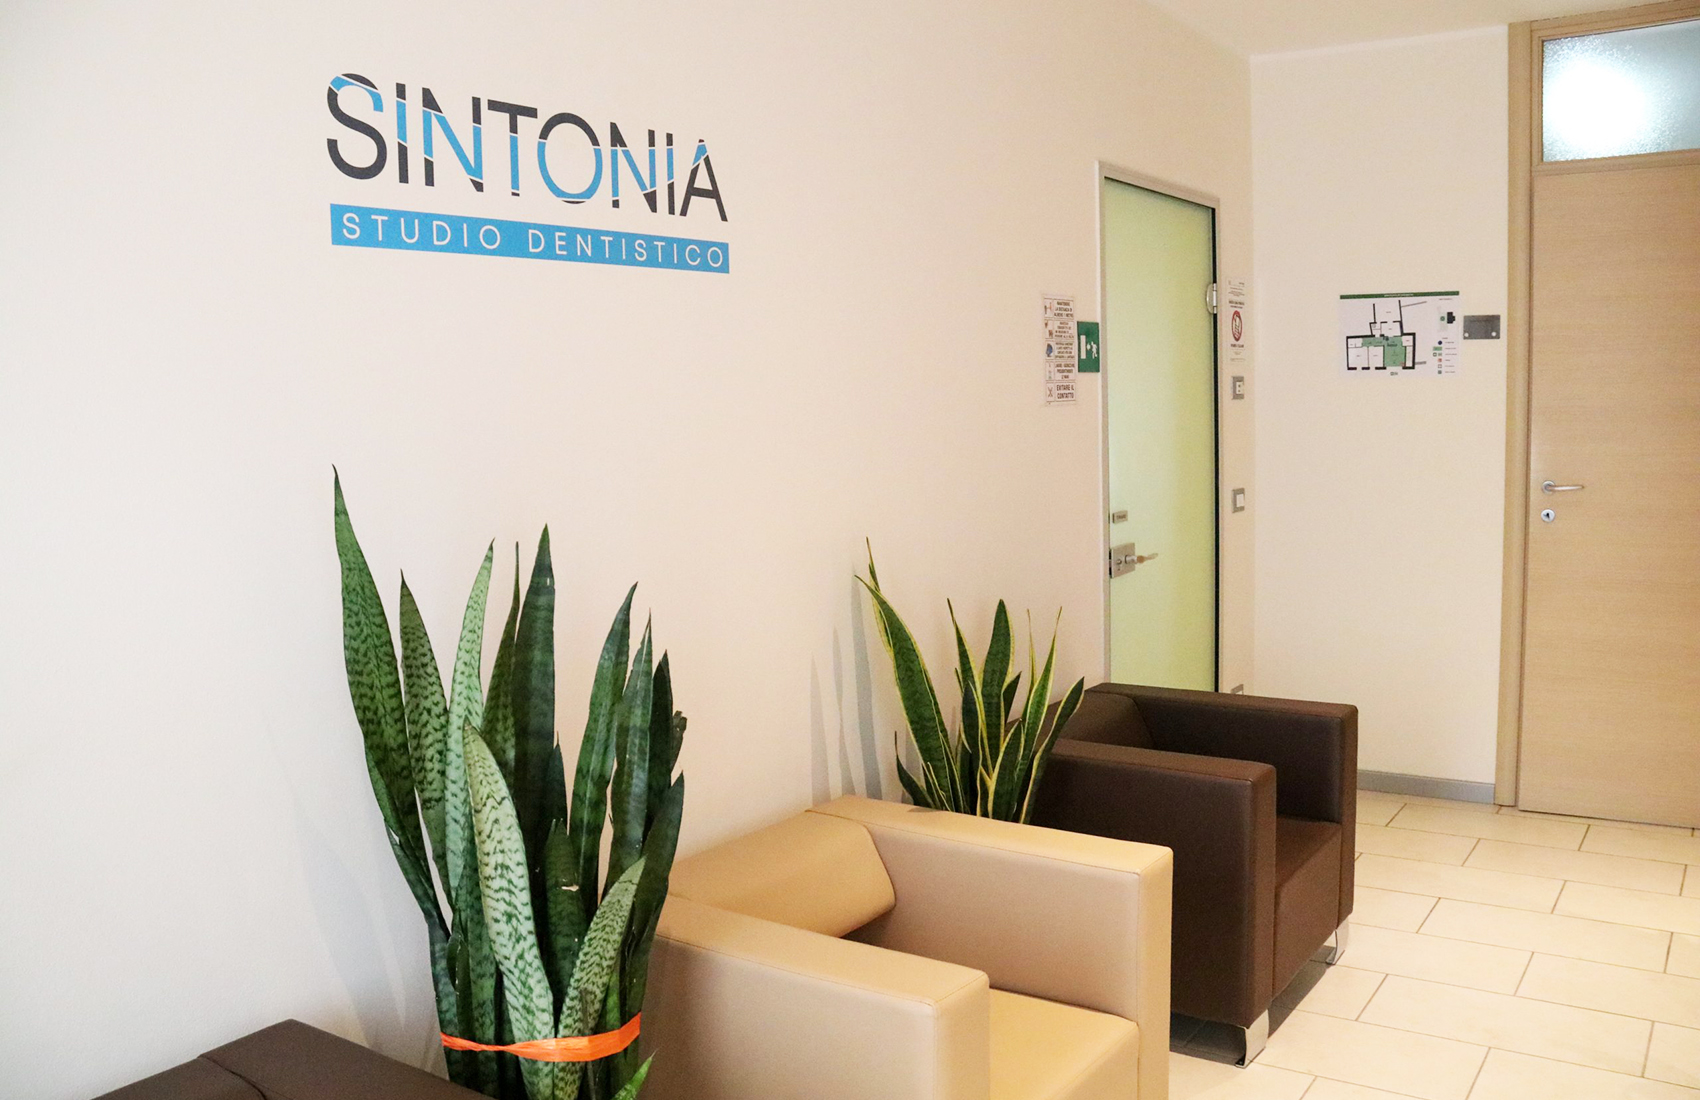 Sintonia Studio Dentistico Bertiolo - Bertiolo